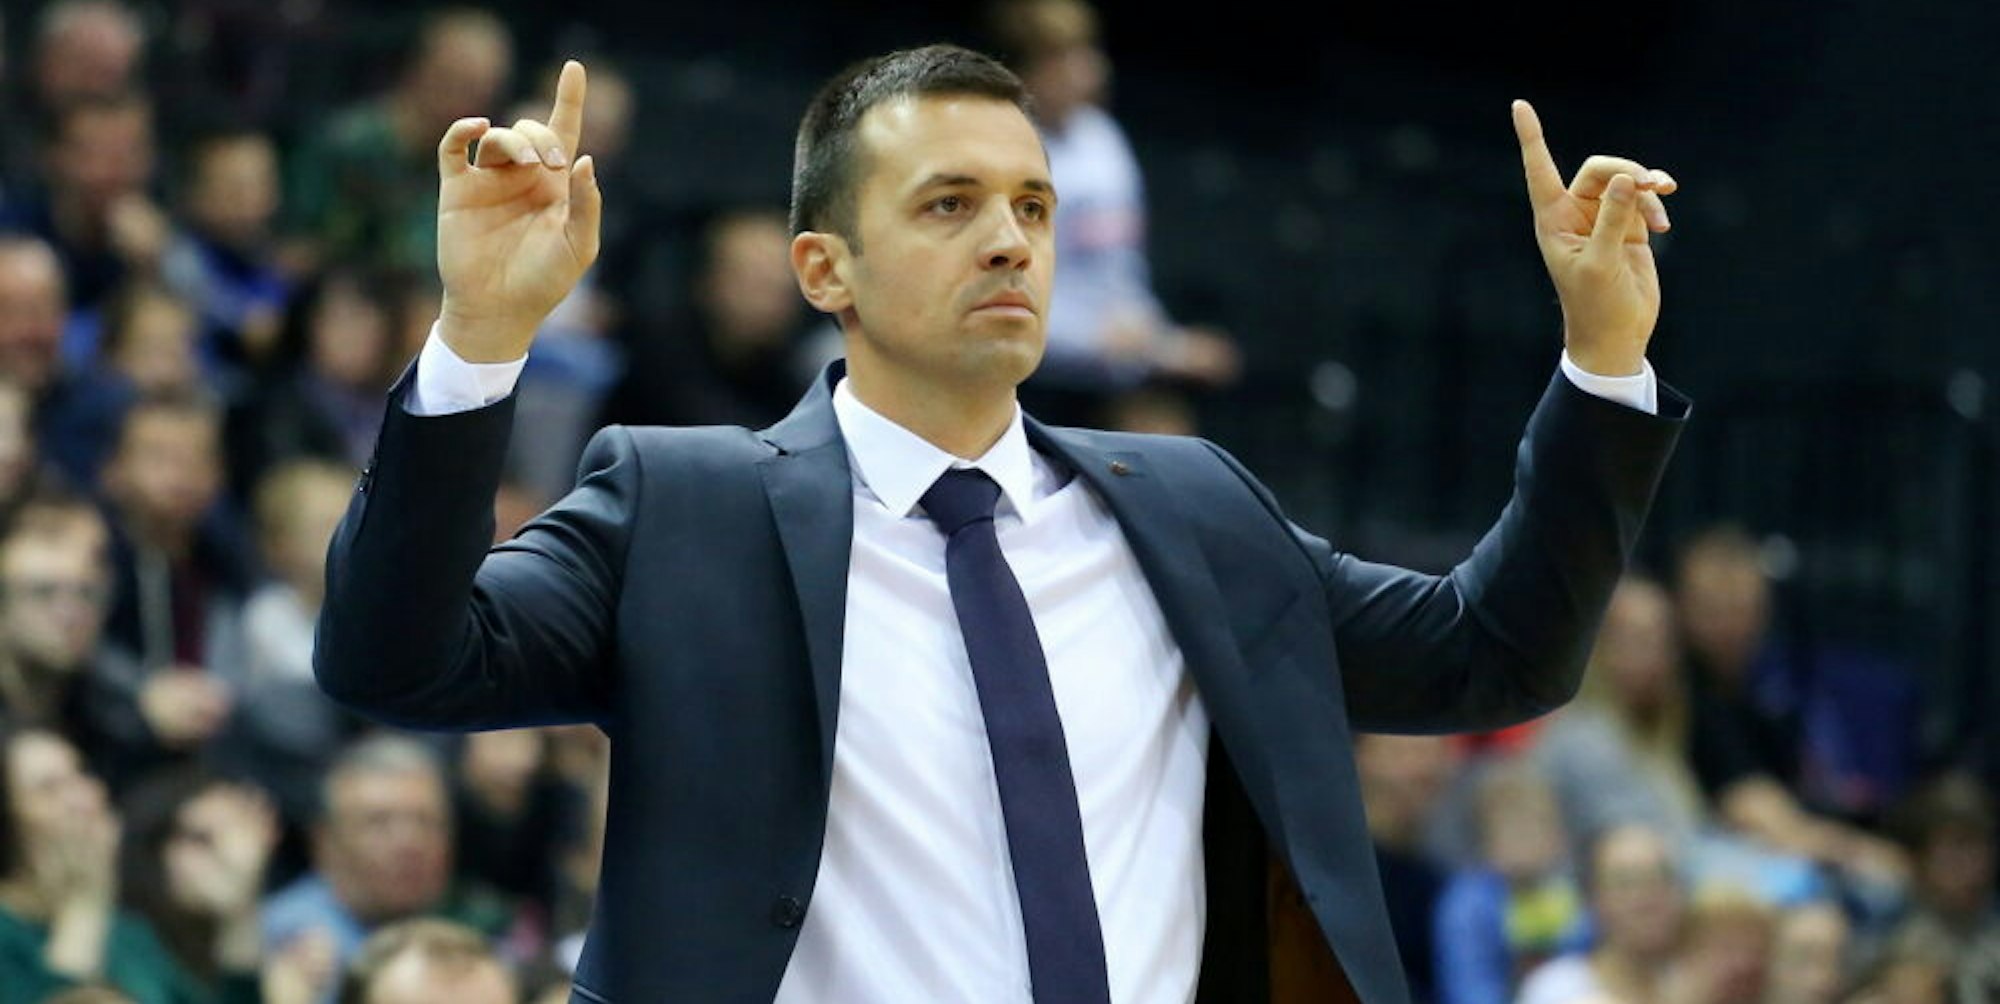 Igor Jovovic ist neuer Headcoach der Telekom Baskets. Der 37-jährige Montenegriner unterschrieb einen Zwei-Jahres-Vertrag. Er war zuletzt Co-Trainer bei Bayern München.